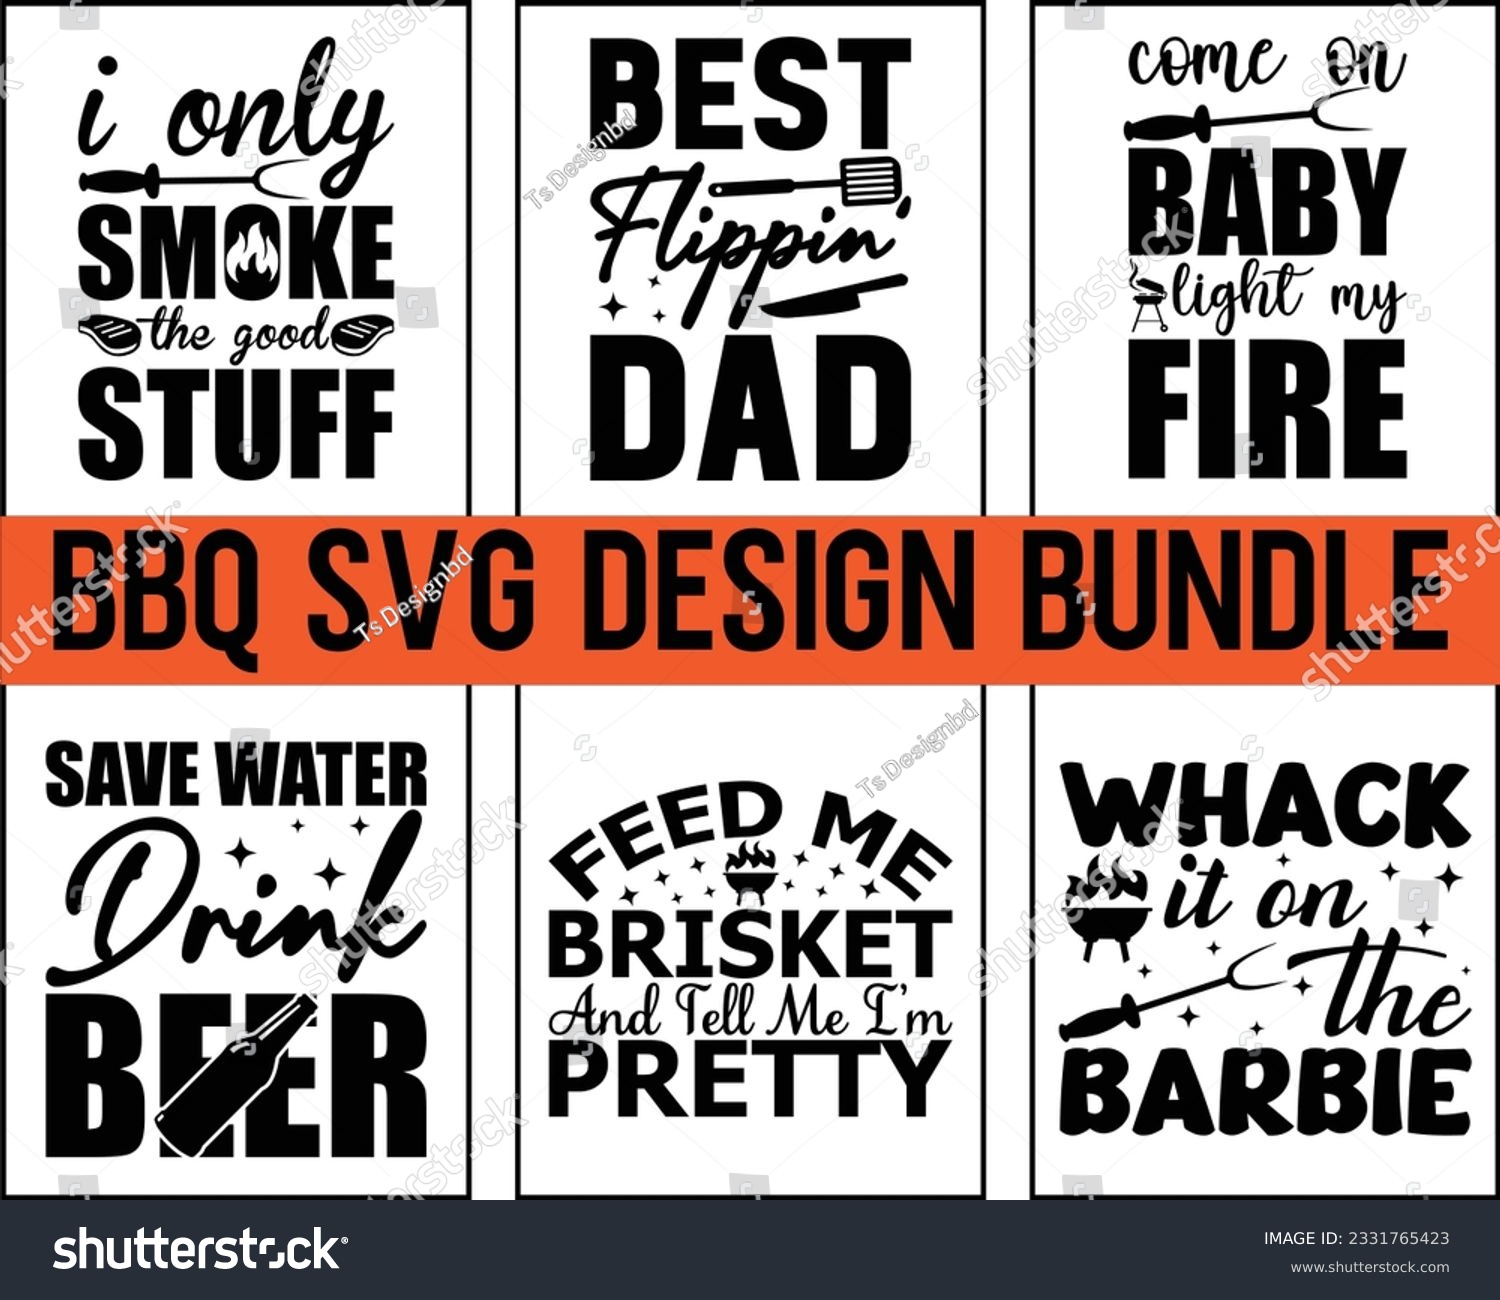 SVG of Barbecue svg Design Bundle,Bbq Svg Bundle,BBQ SVG design and craft files, Barbeque party,Funny BBQ,bar-b-q,kitchen, master,food,beer,Svg Bundle svg